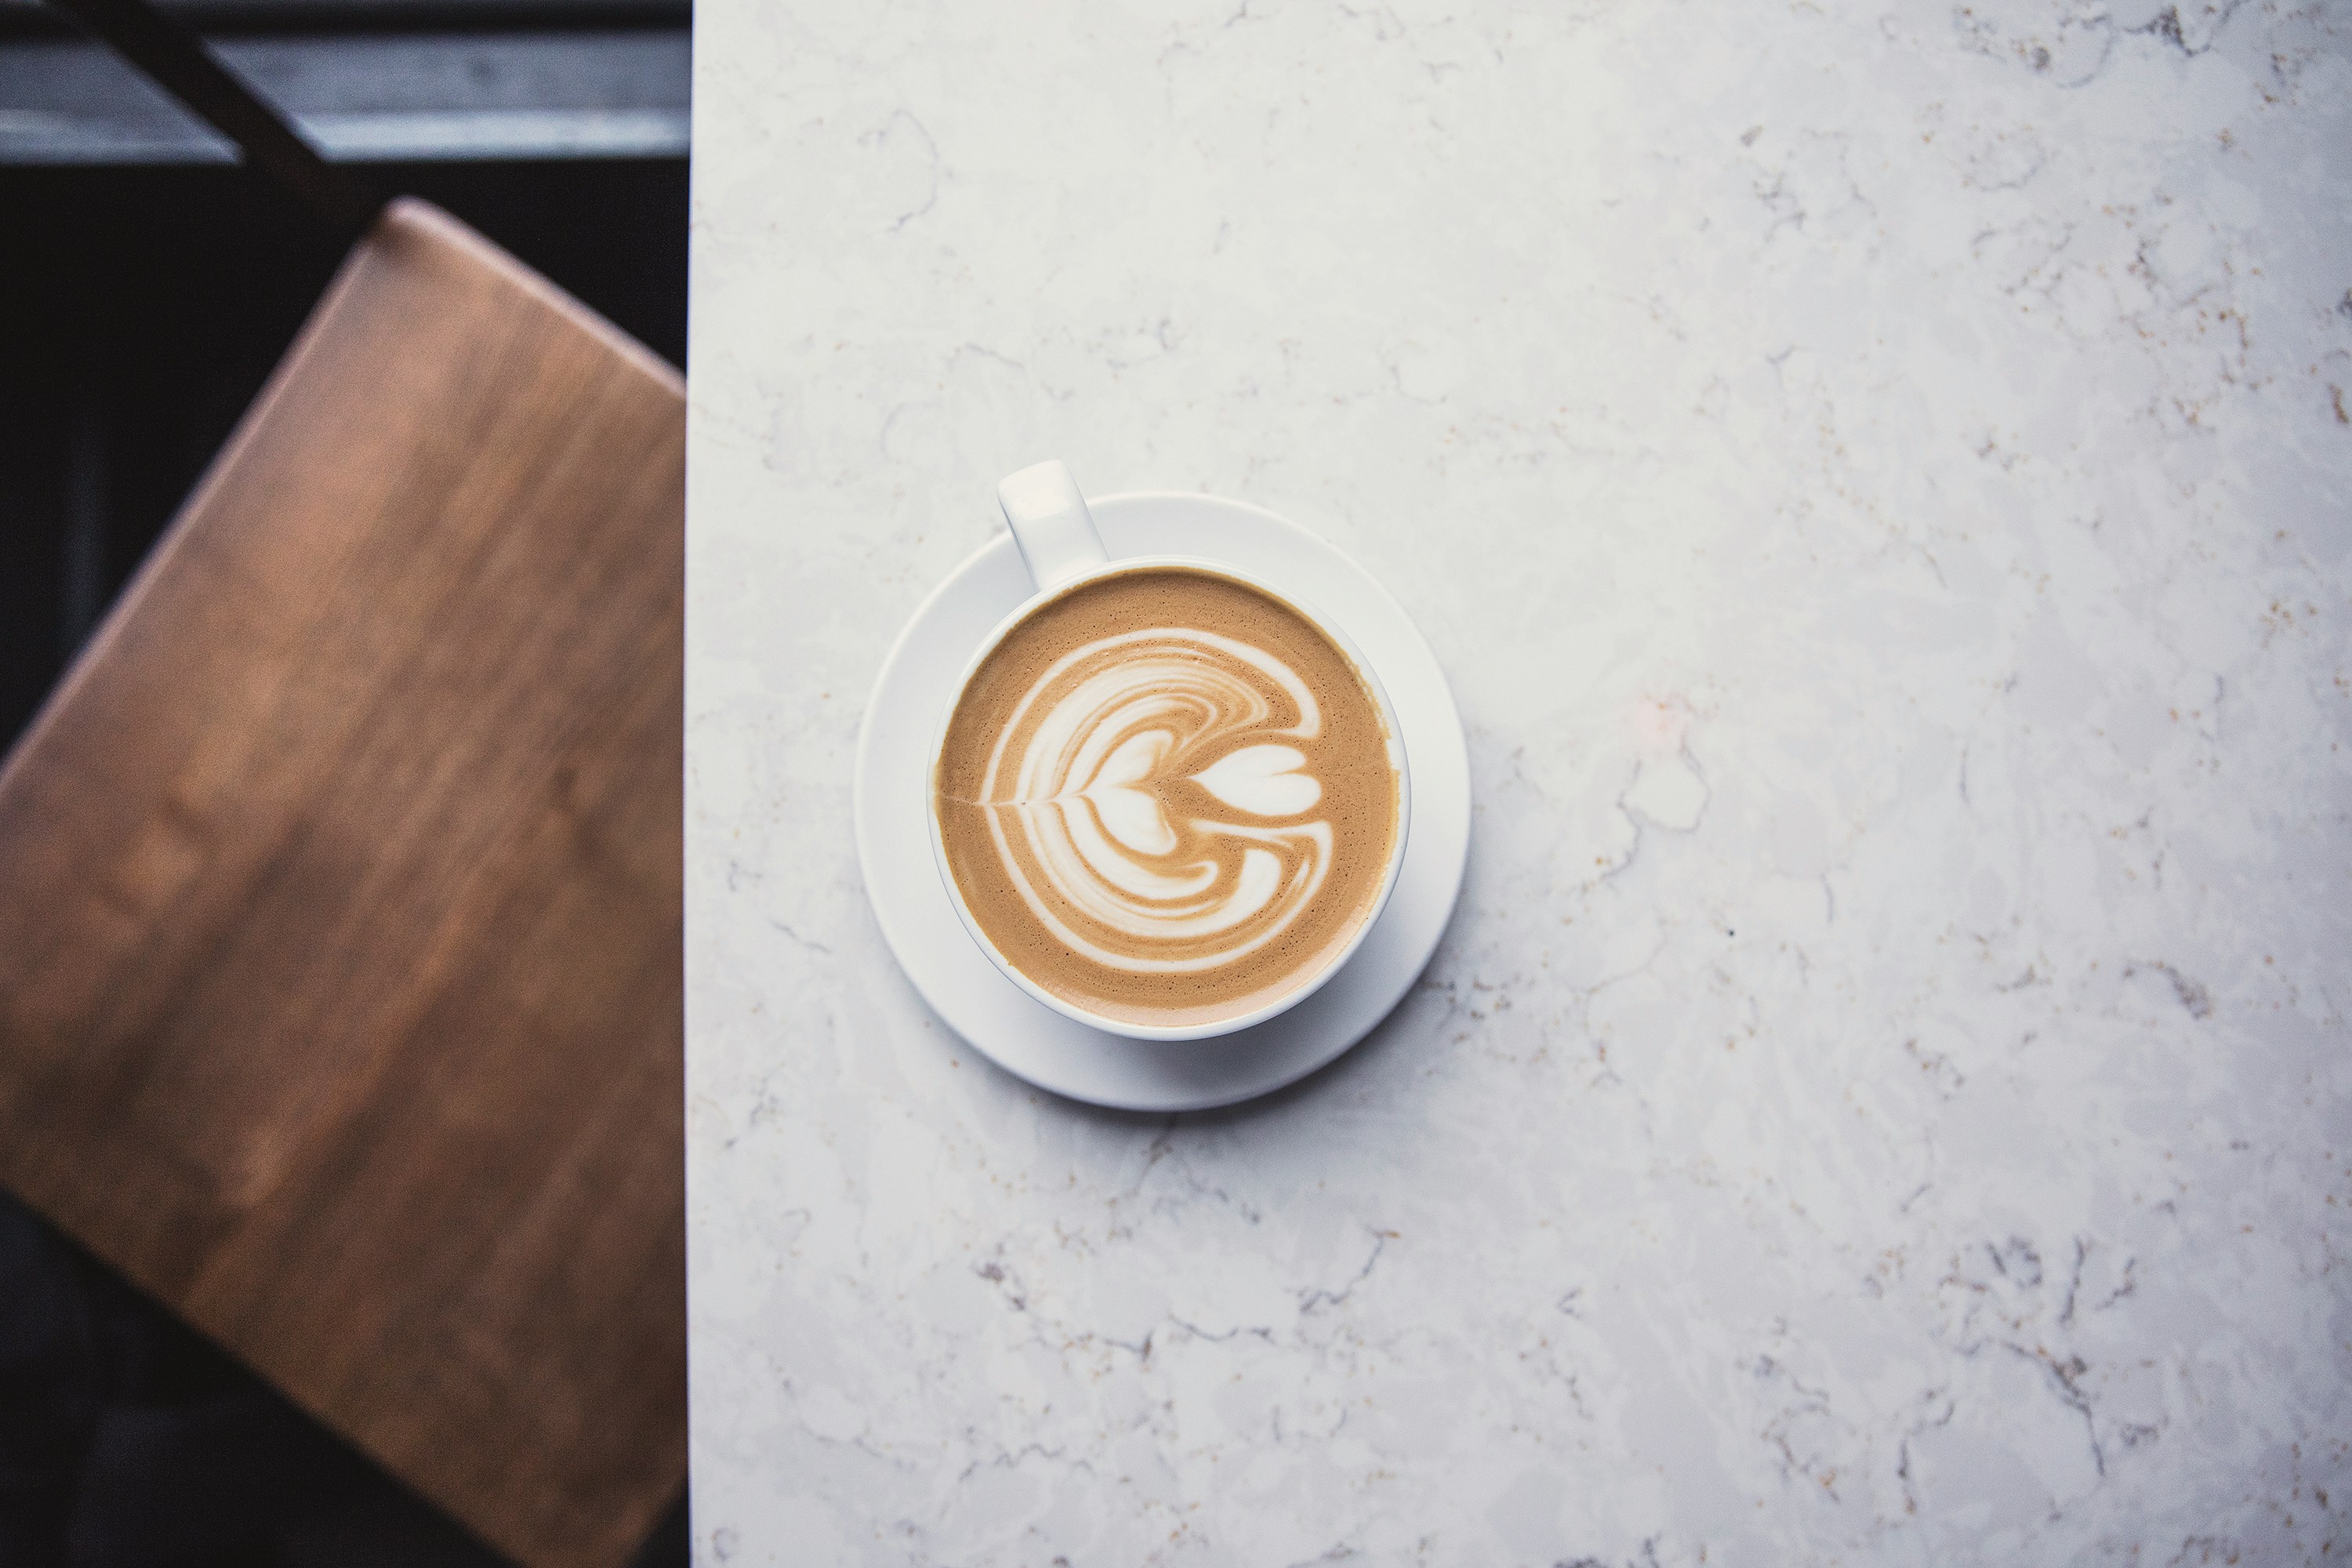 Το σημερινό doodle της Google είναι αφιερωμένο στον flat white καφέ- Η ενδιαφέρουσα ιστορία και η διαφορά του από το latte